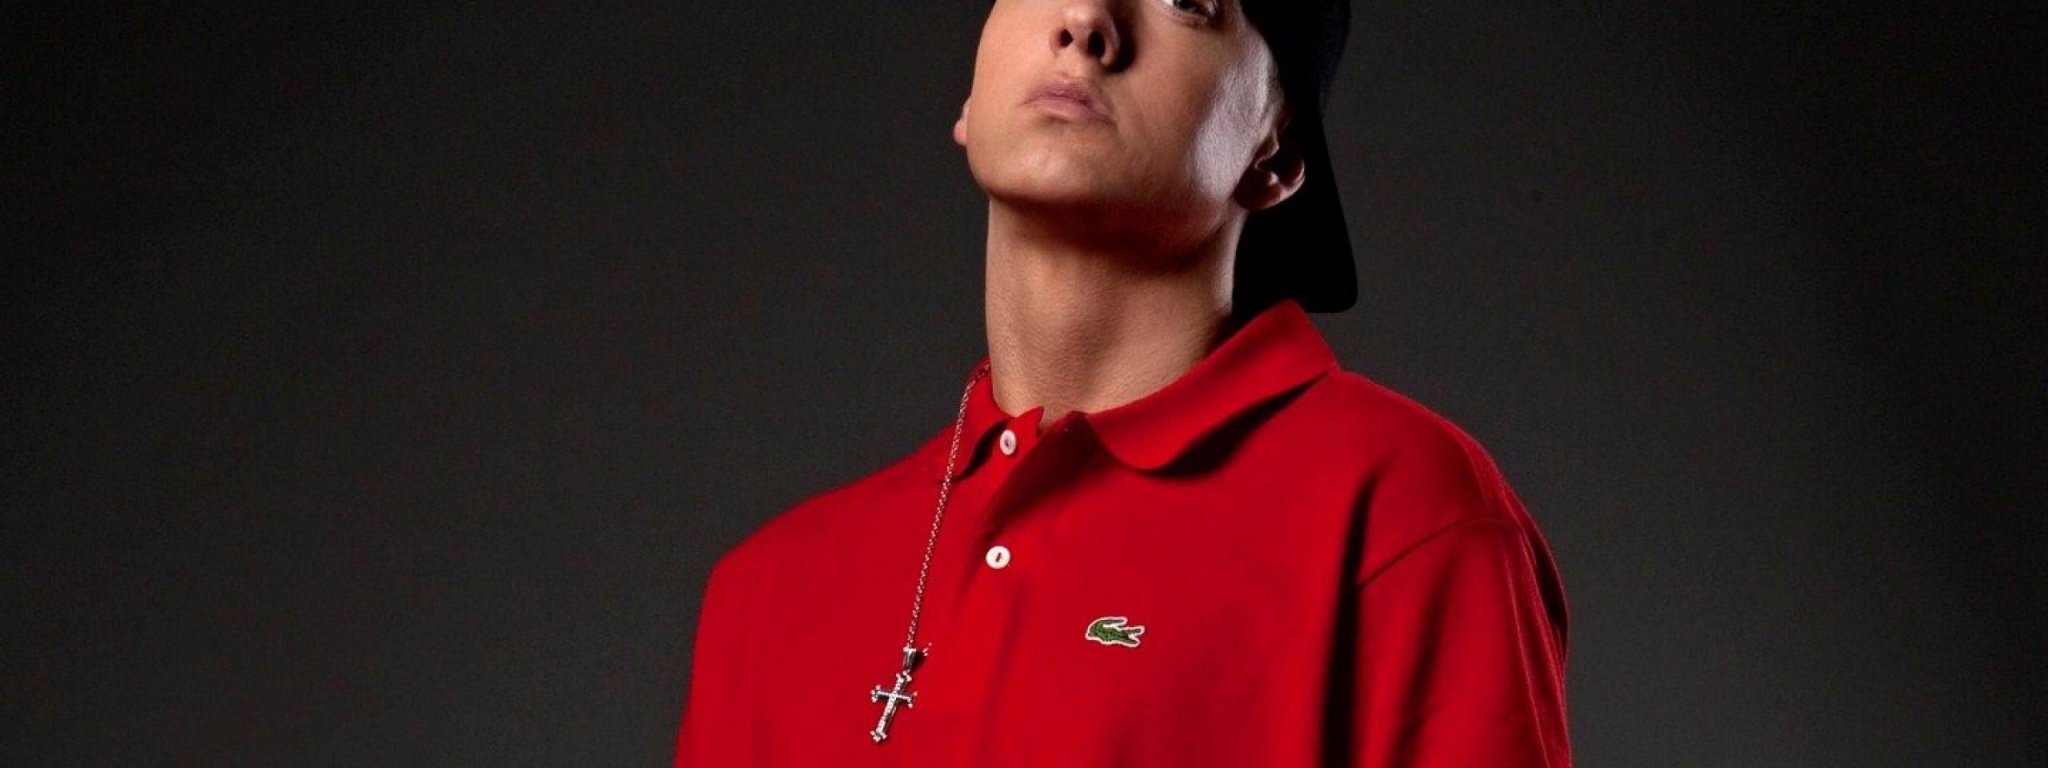 Eminem Singer Rap Music